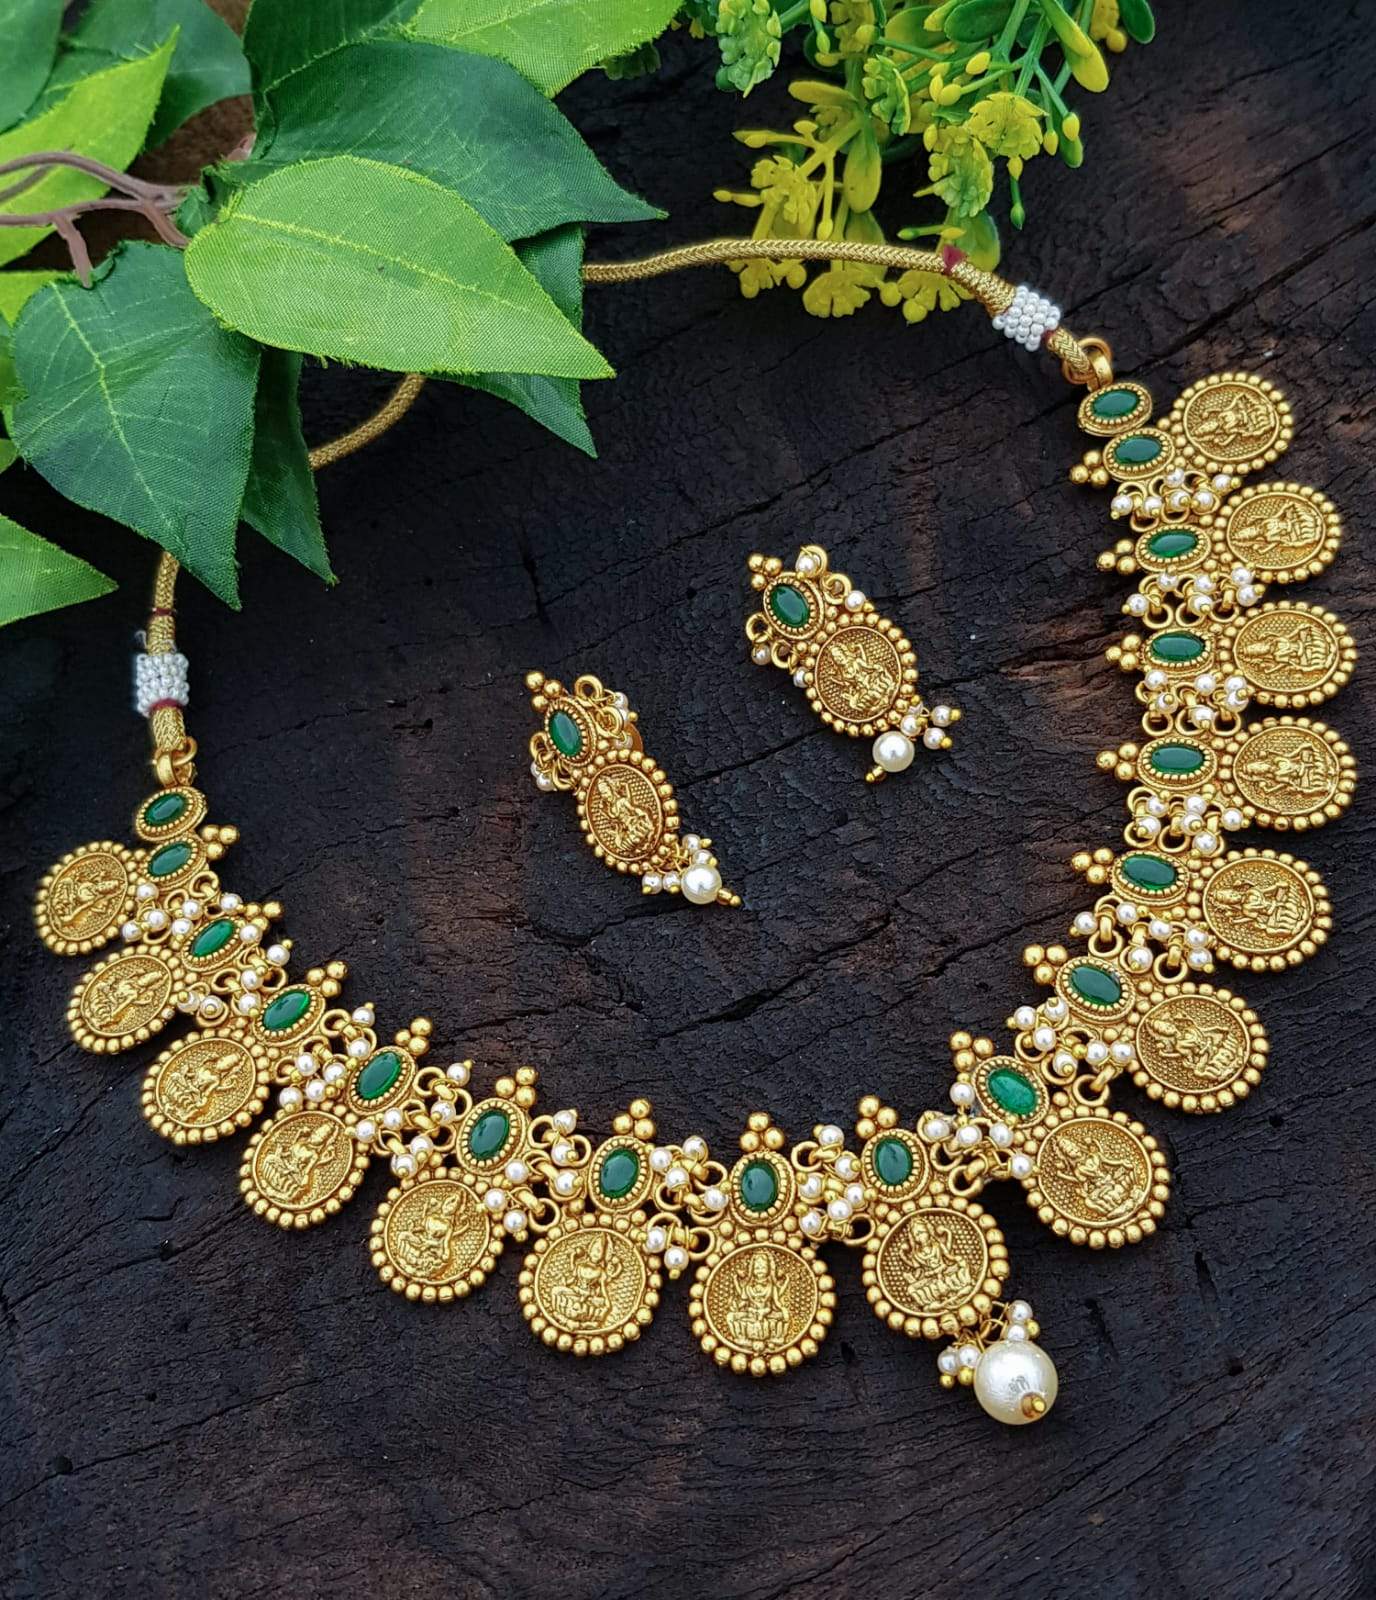 Premium Laxmi Kasu Necklace with emerald stones in premium polish 4823N